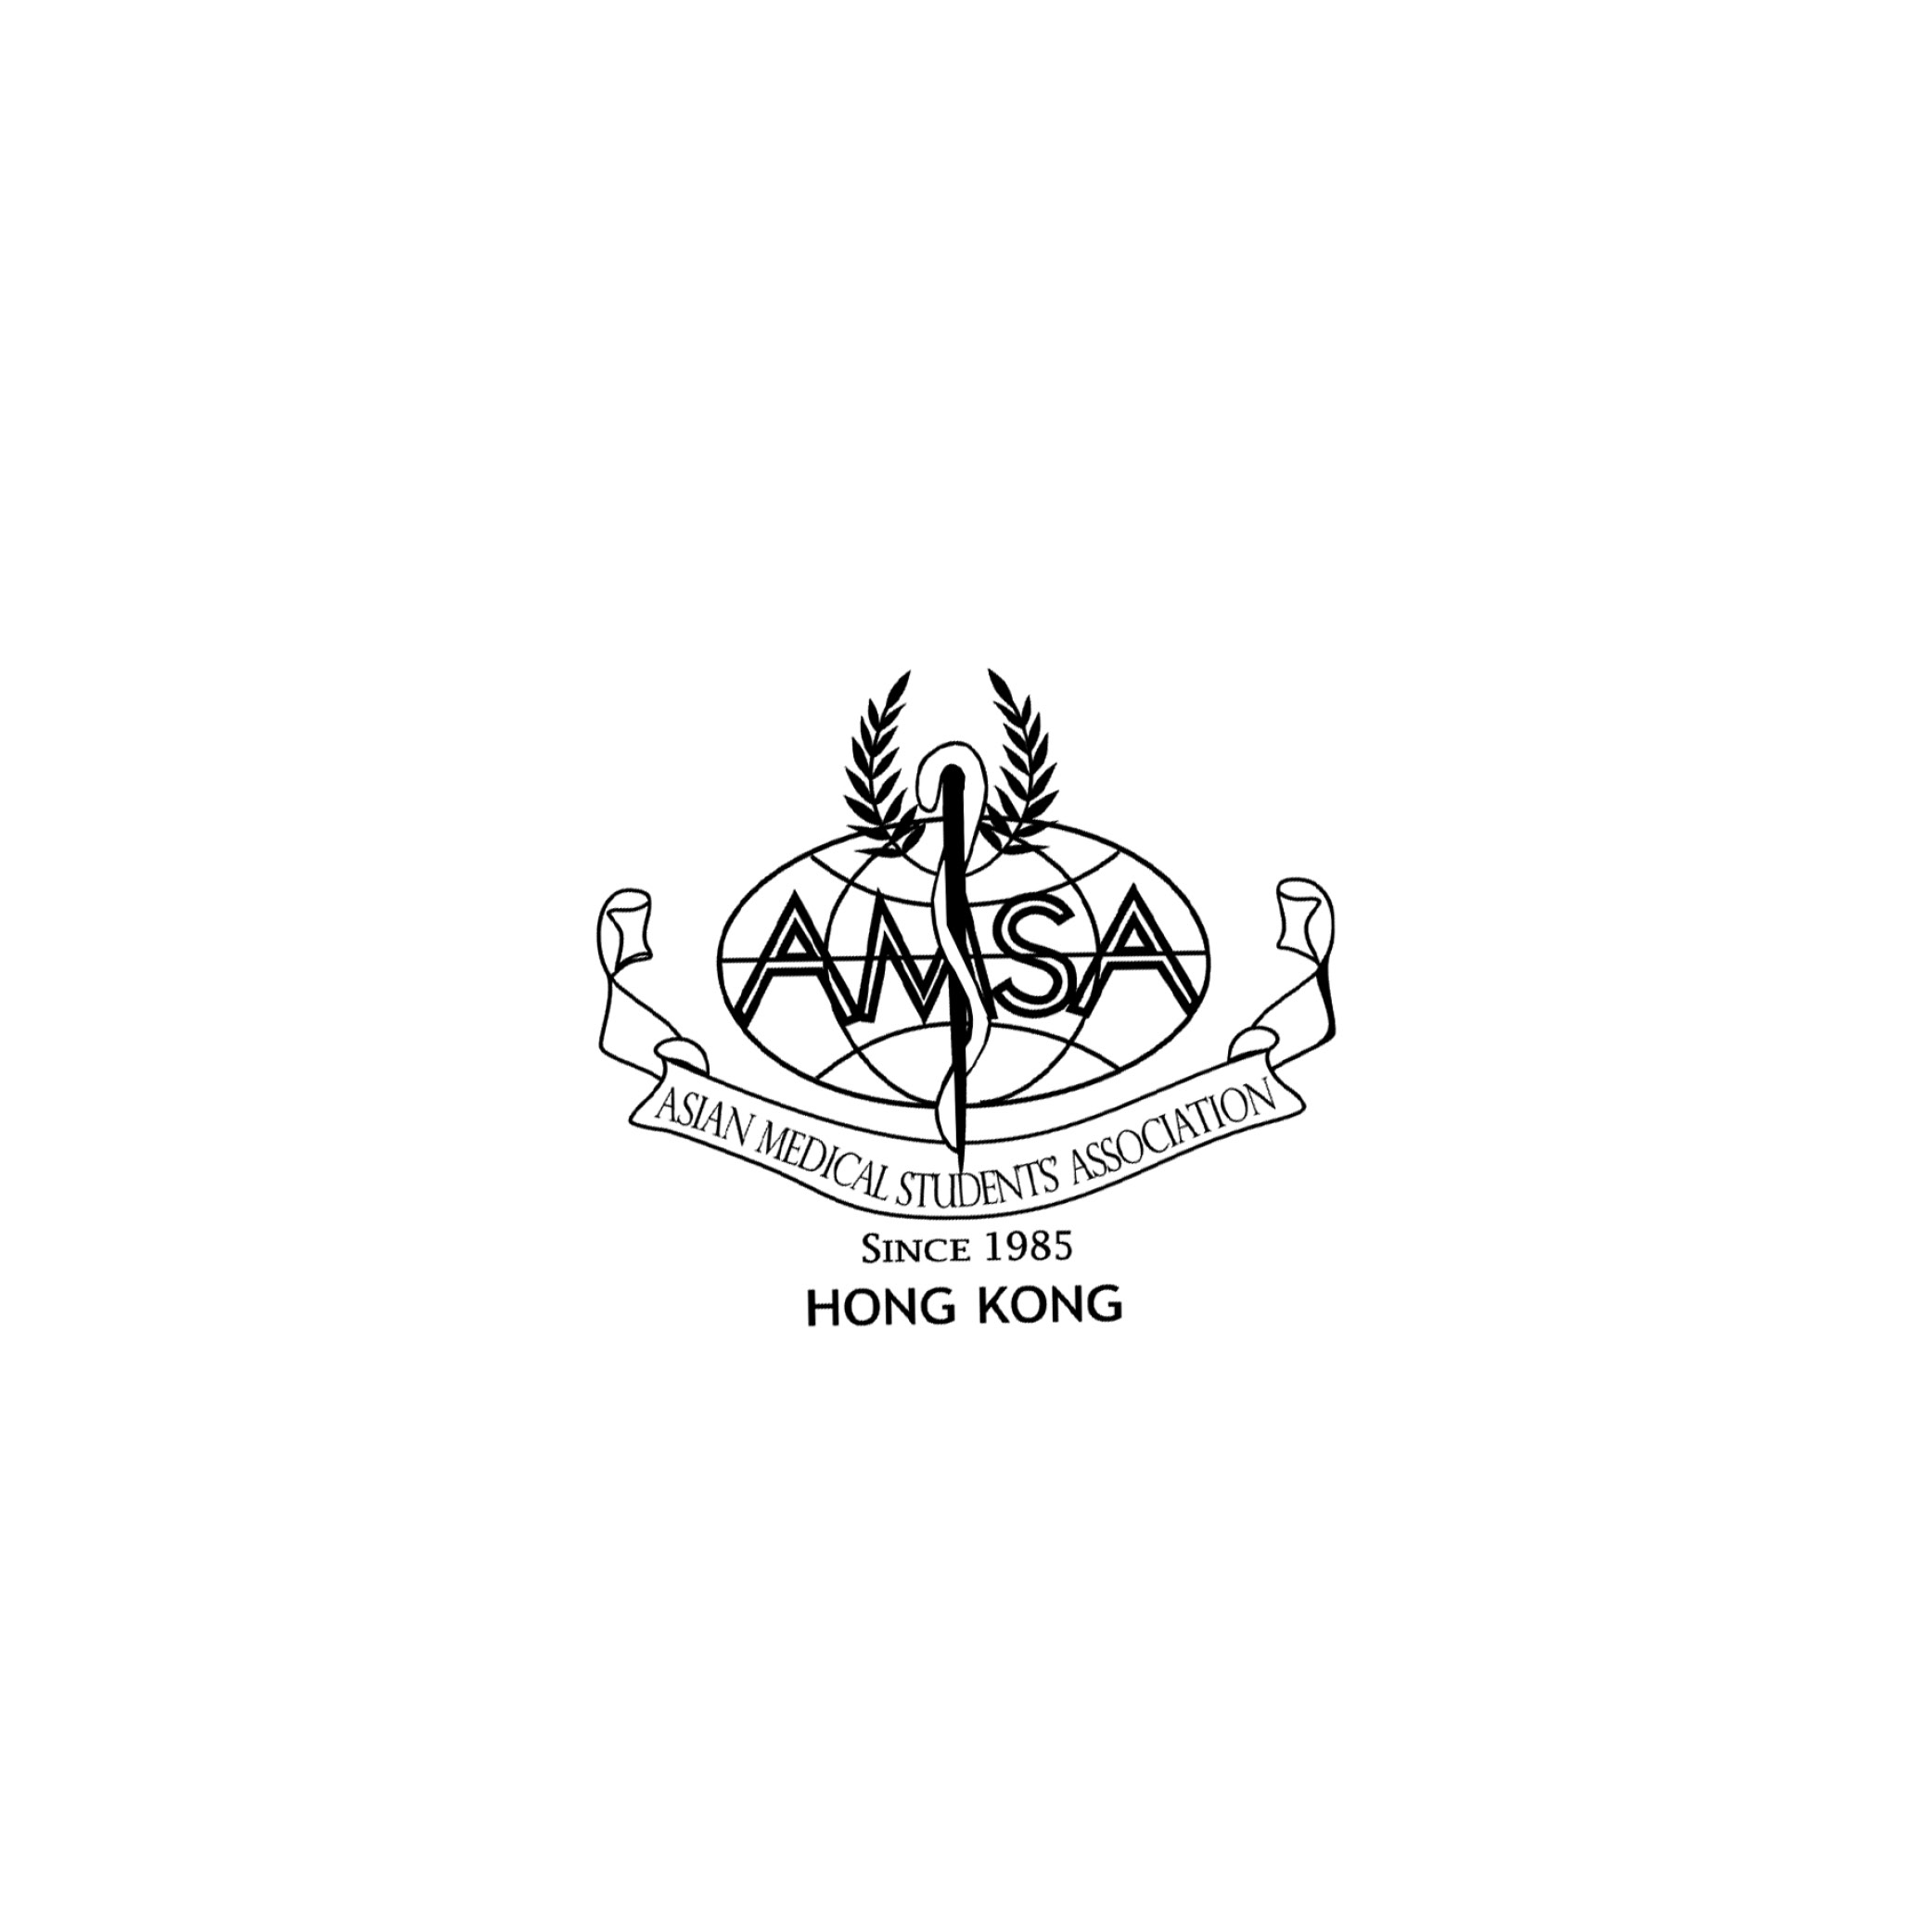 Logo of Asian Medical Students’ Association Hong Kong